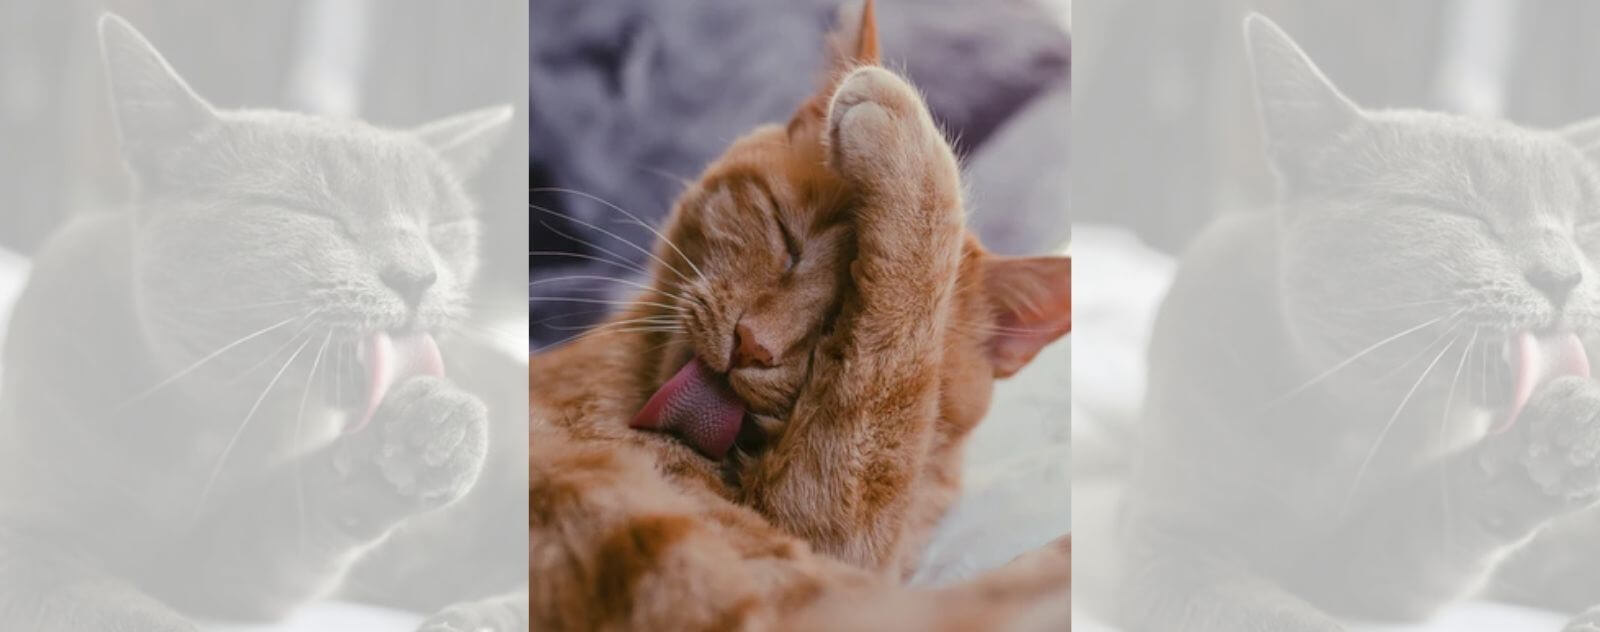 Gato que va al baño con su lengua áspera